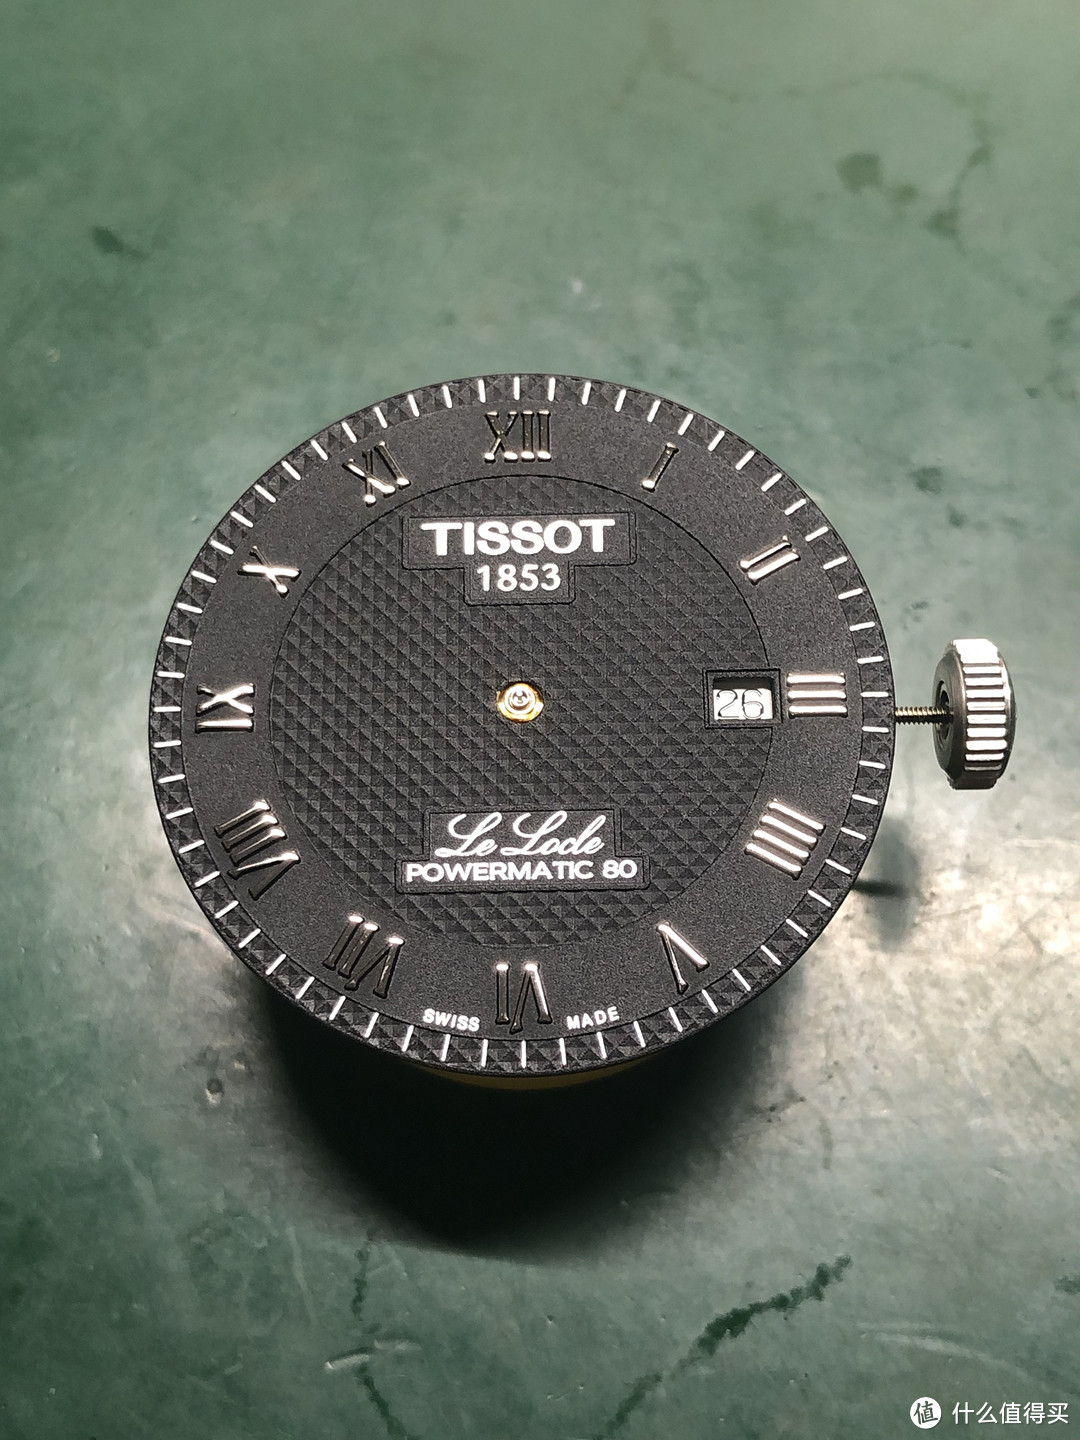 瑞表鉴赏之天梭手表C07111机芯保养